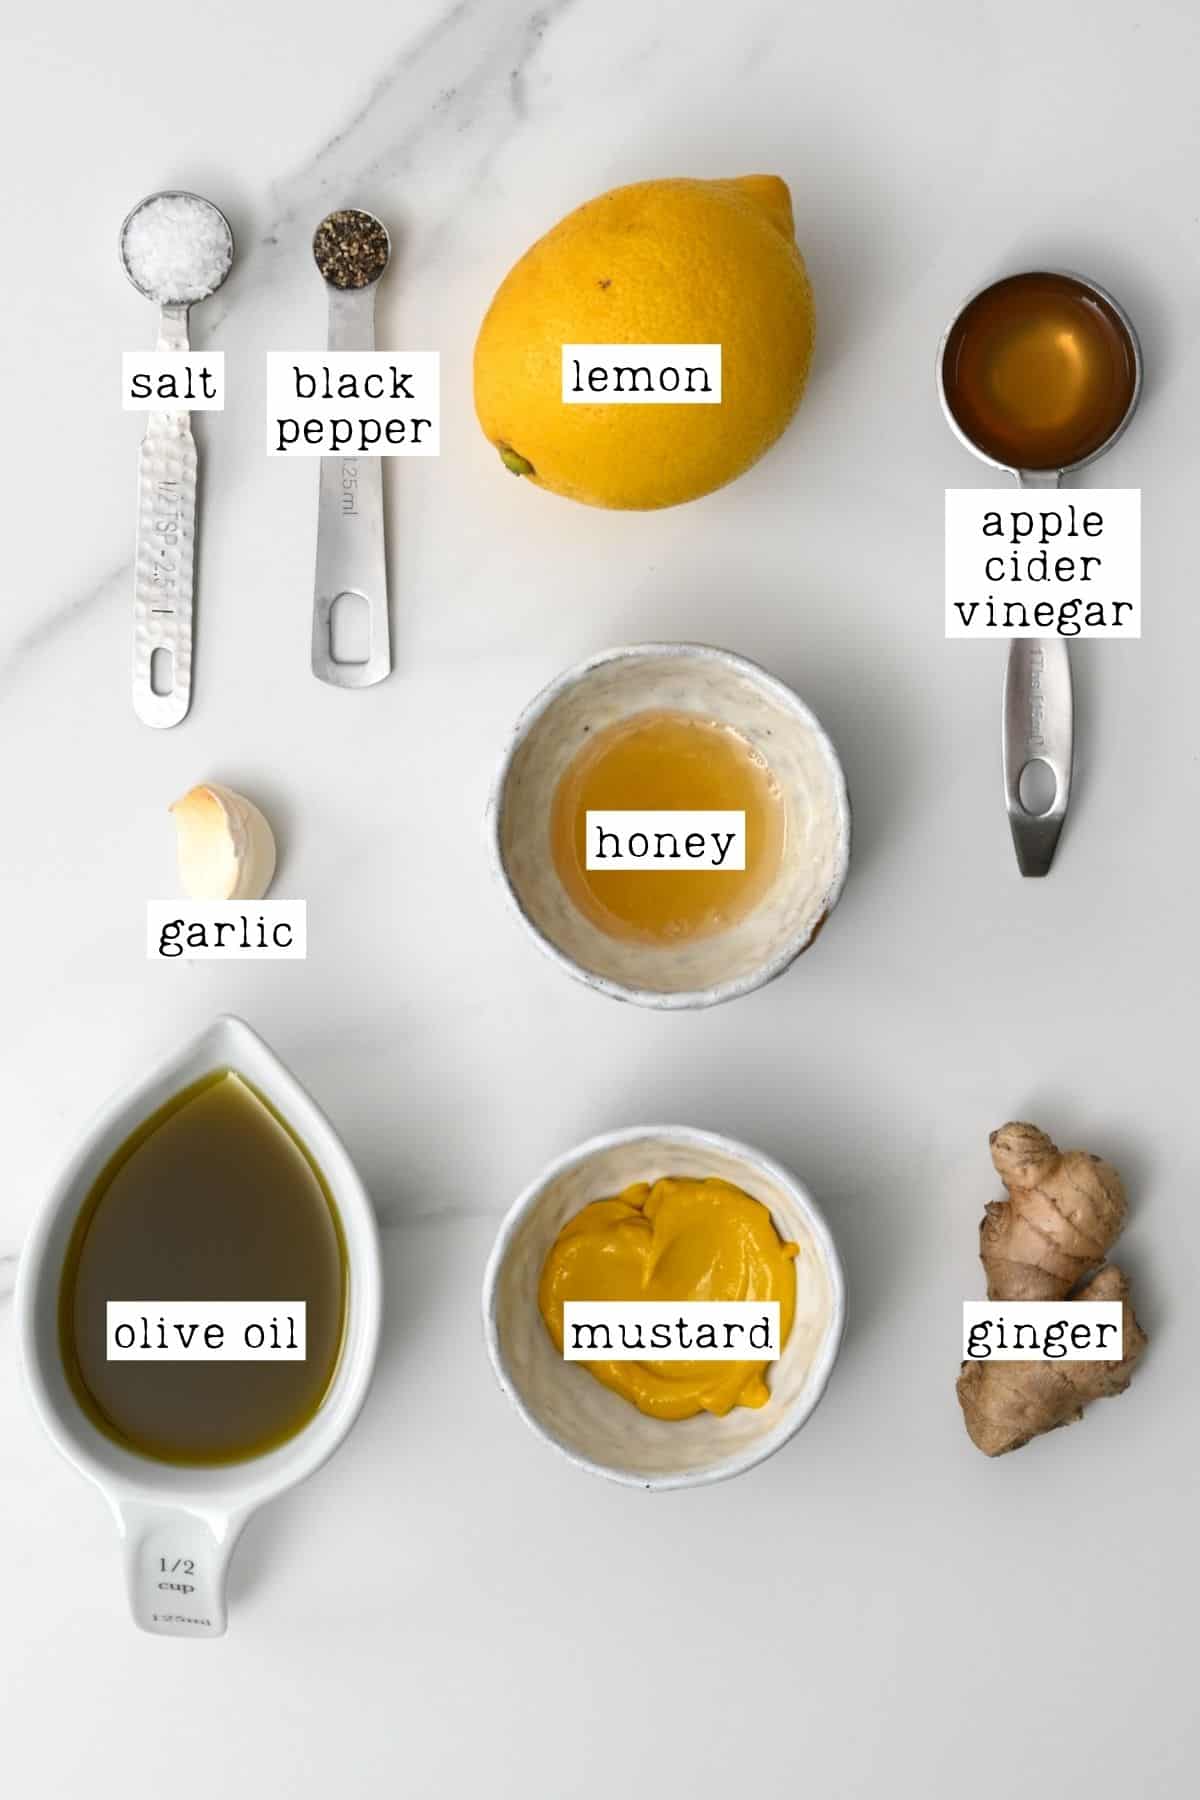 Ingredients for ginger salad dressing